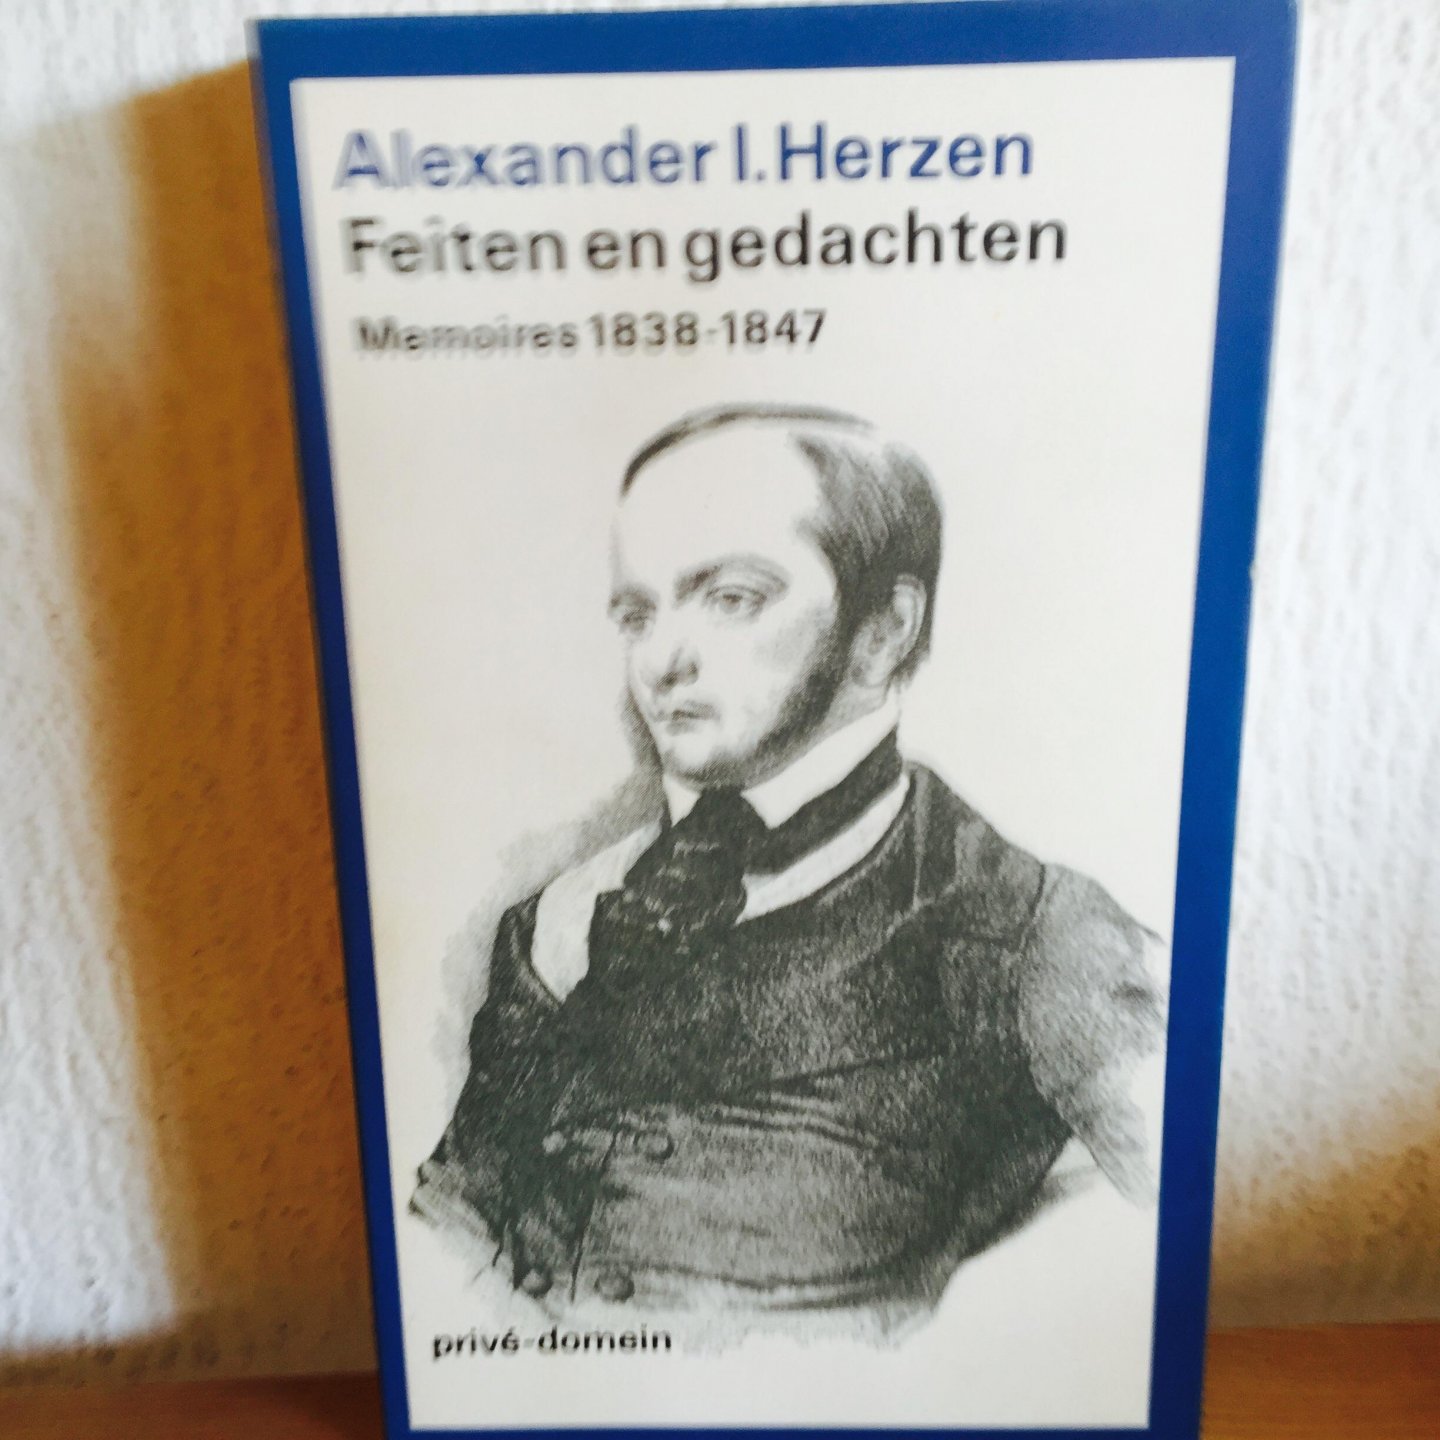 Herzen, Alexander I. - Prive domein, nummer 104, Feiten en gedachten  / 1838-1847 (POD) / memoires